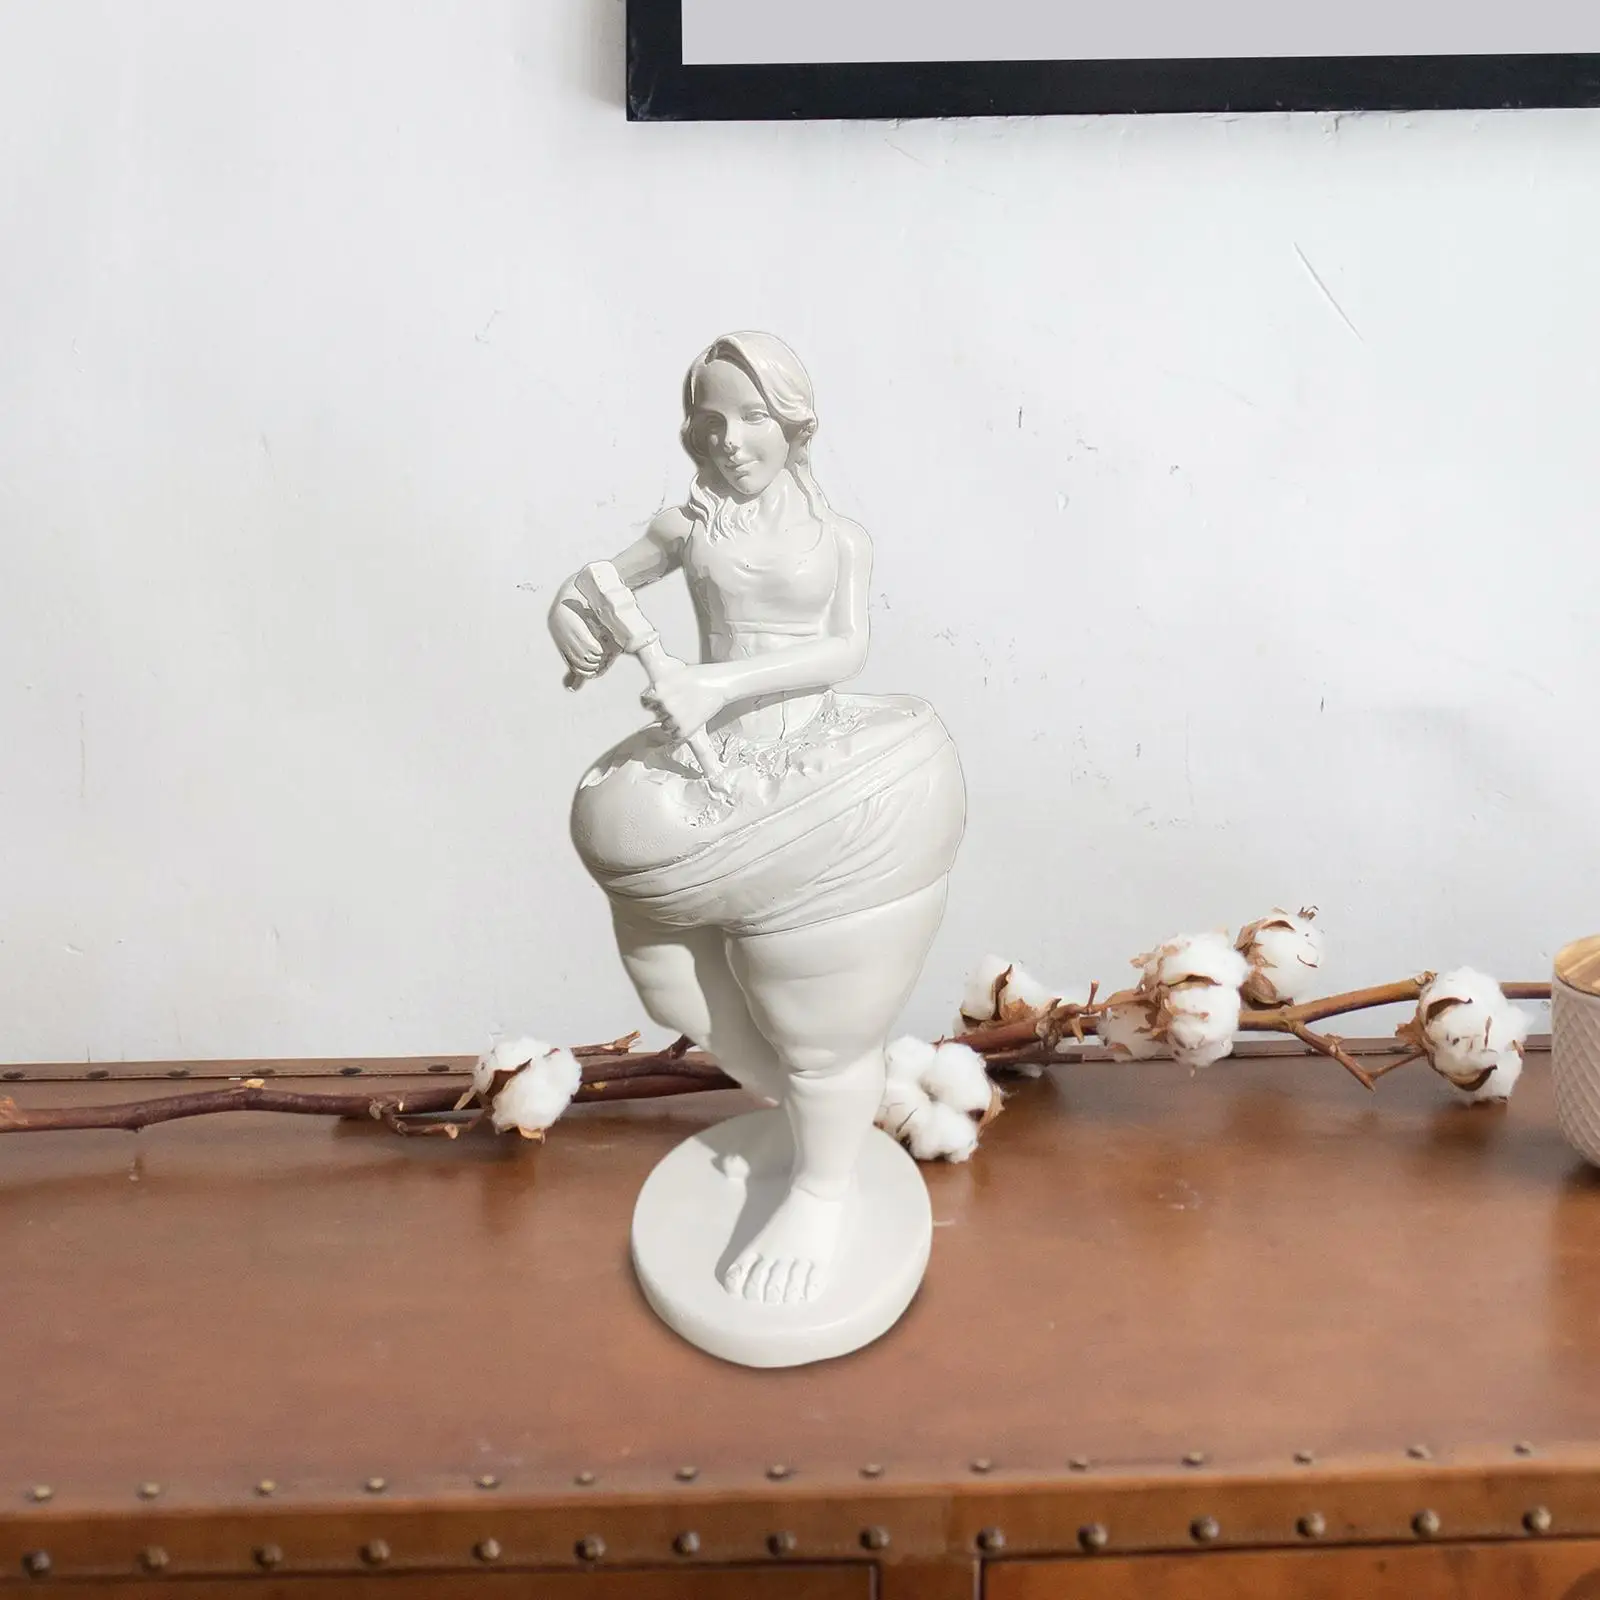 Дамски статуетка, женска статуя, маса за практикуване на йога, централните предмети, изваяни подаръци